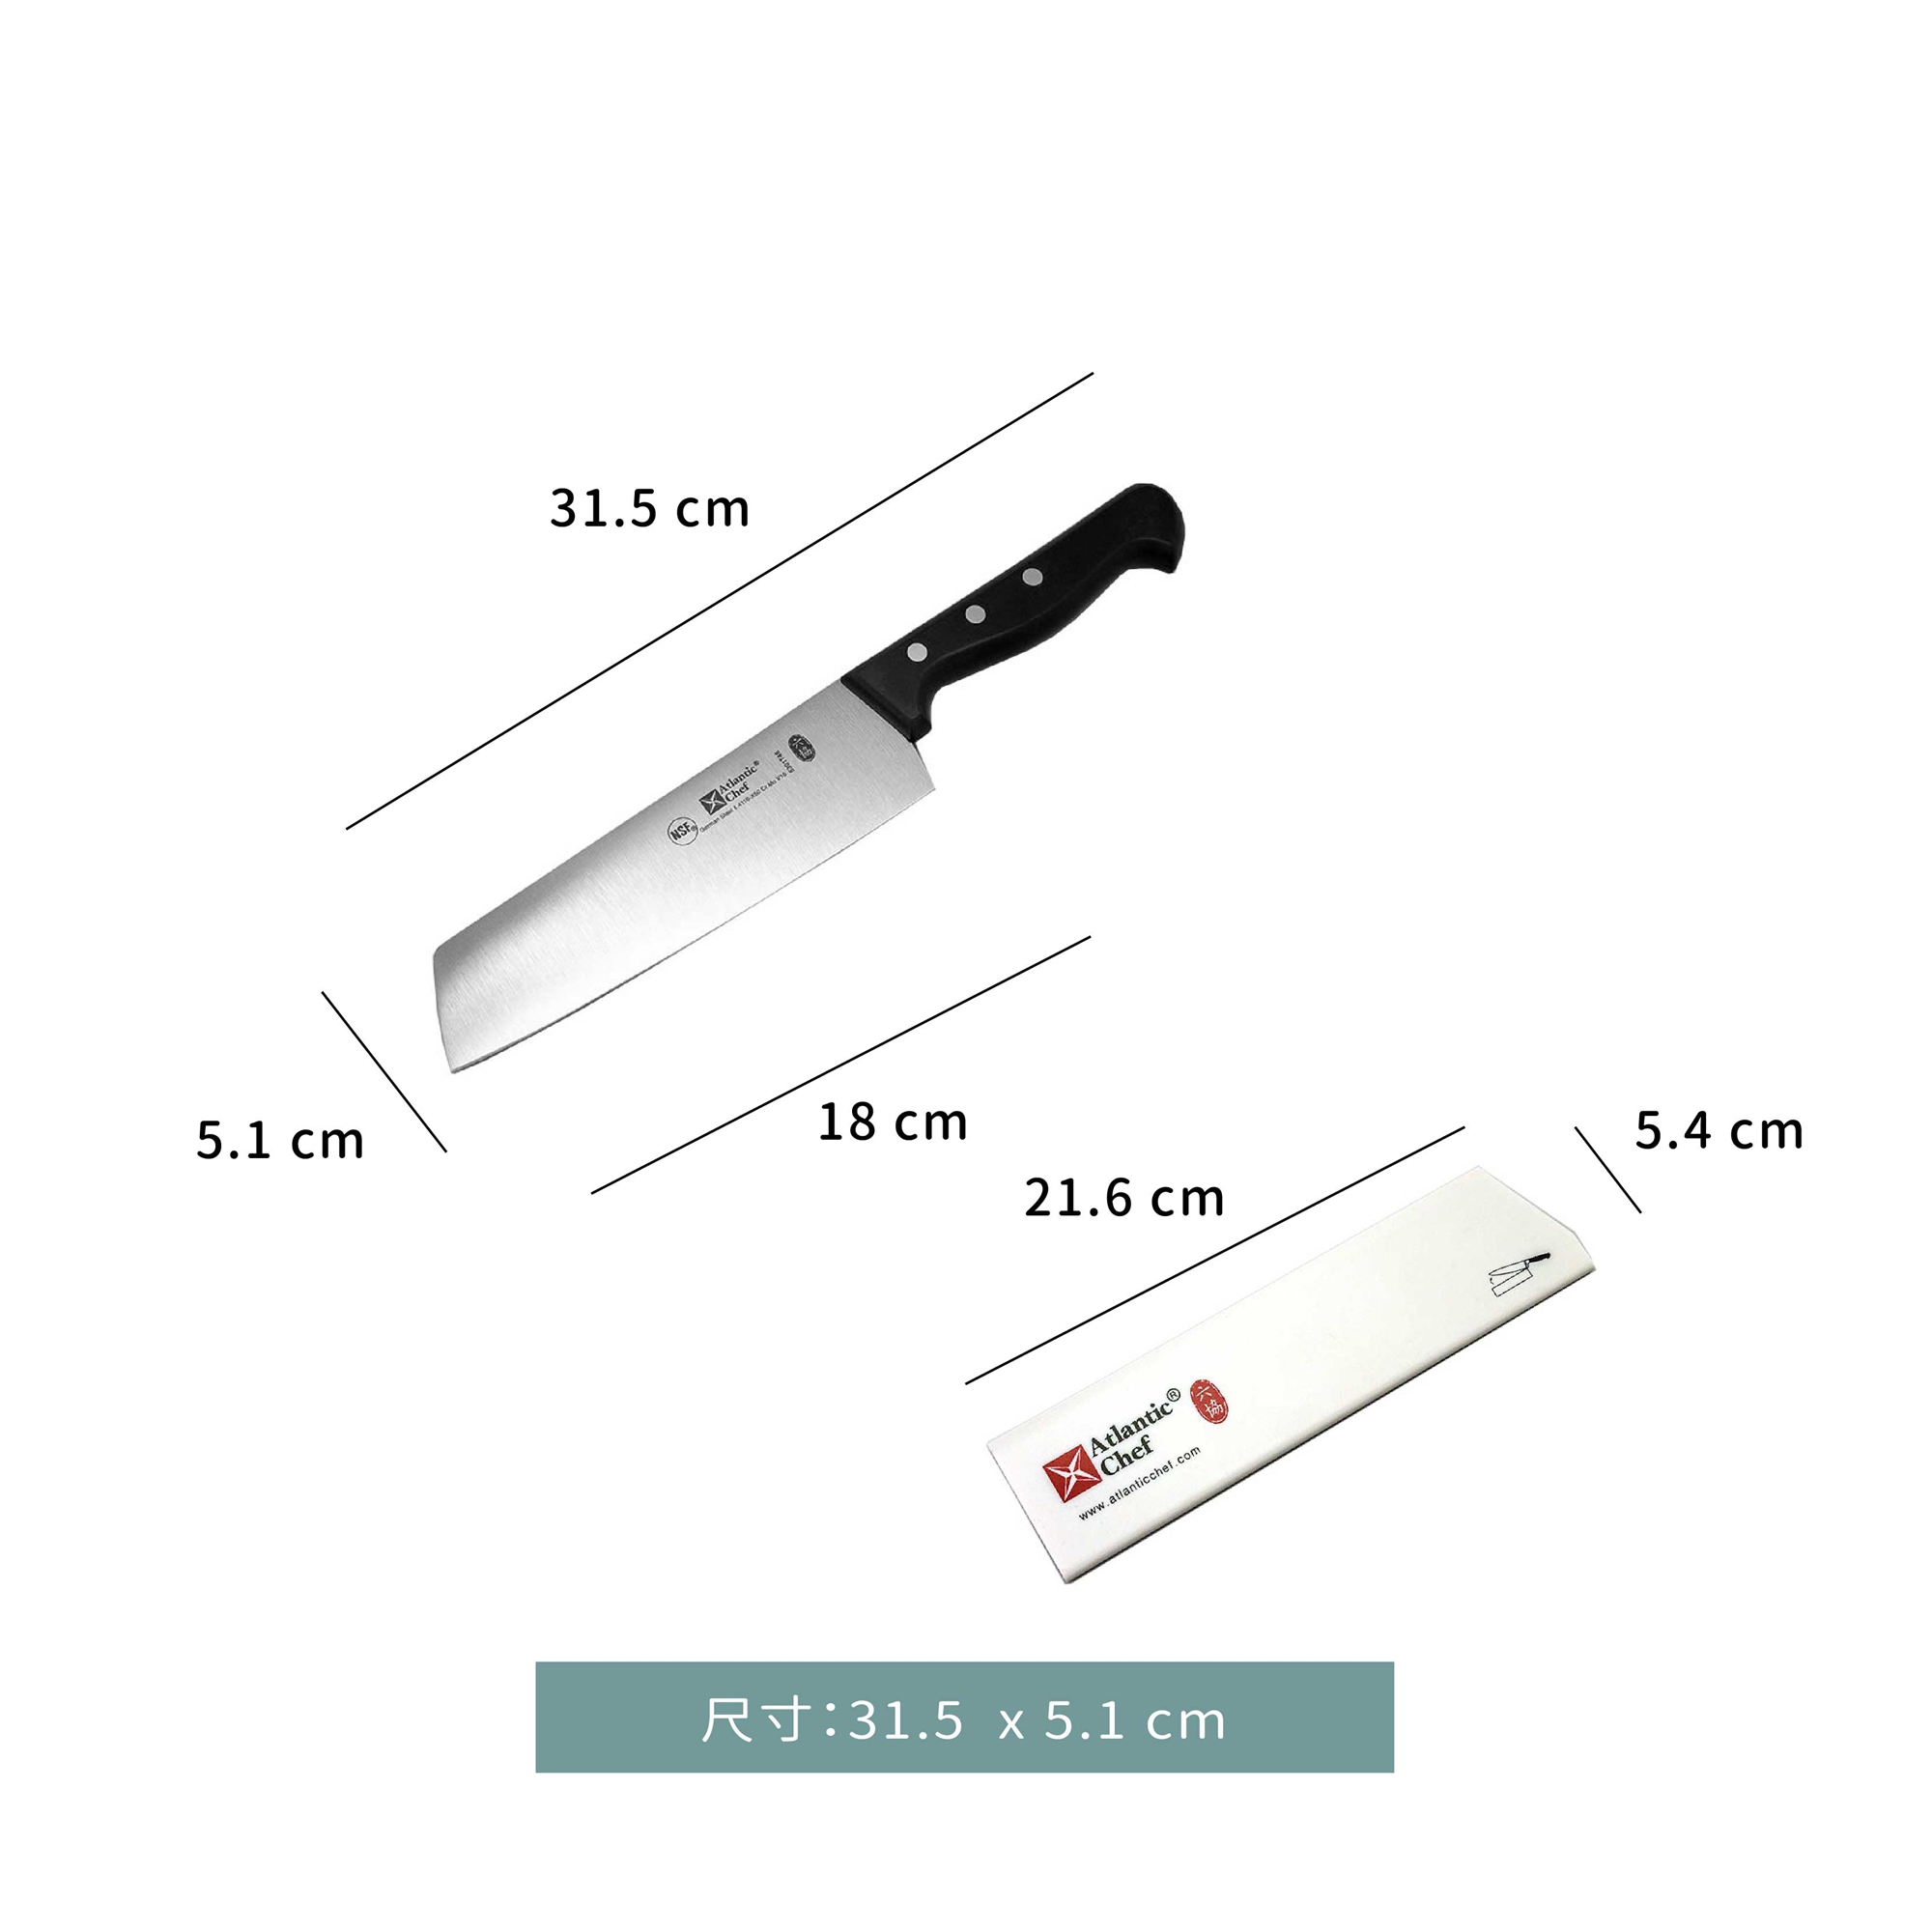 刀☆蔬果刀｜31.5 x 5.1 cm｜單個 ★附贈 安全保護刀鞘